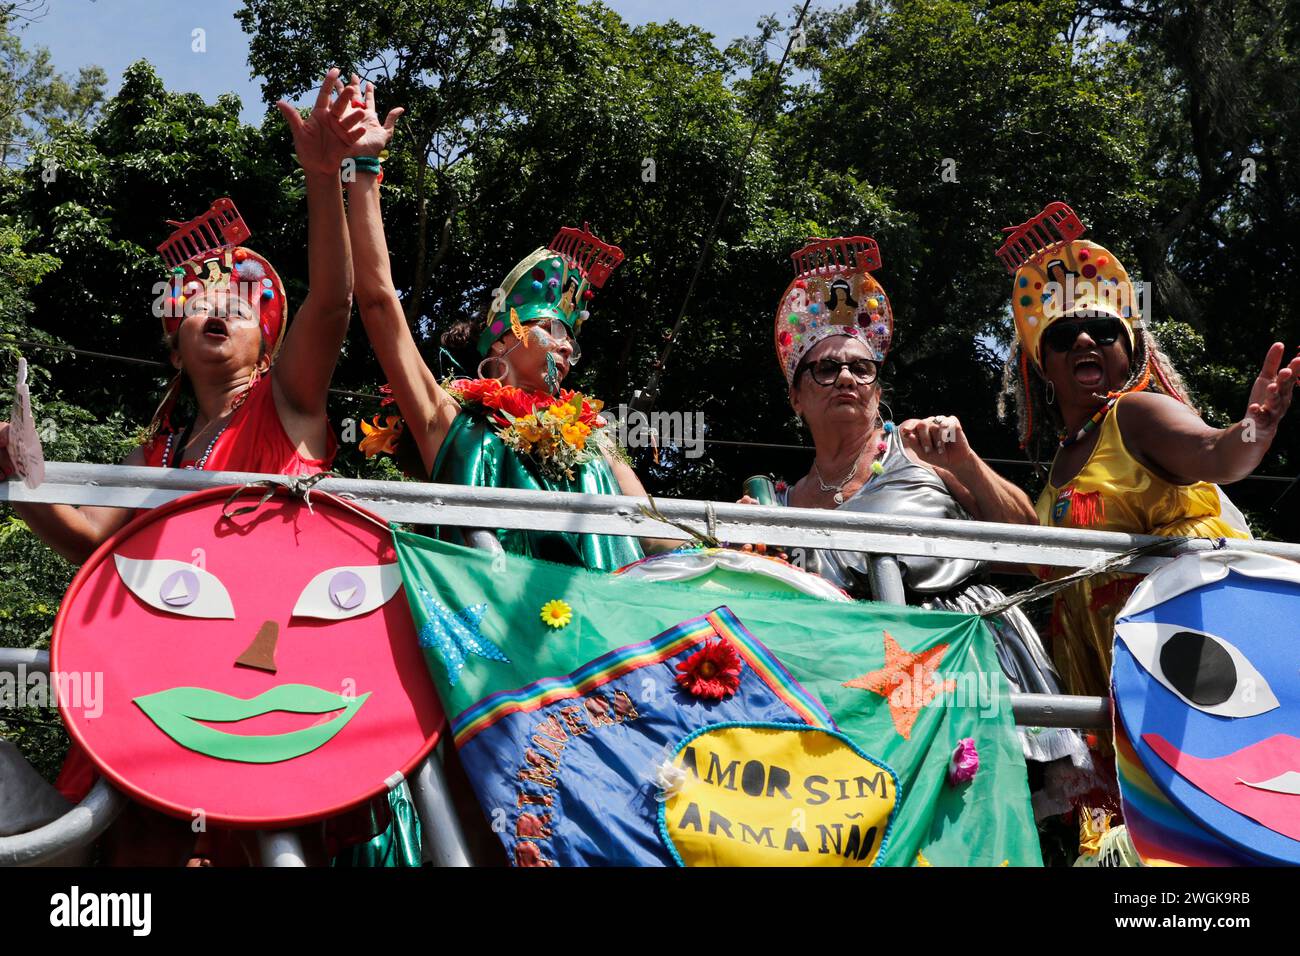 Sfilata di carnevale di strada a Rio de Janeiro. I festaioli si esibiscono alla sfilata di carnevale Bloco das Carmelitas nelle strade del quartiere di Santa Teresa Foto Stock